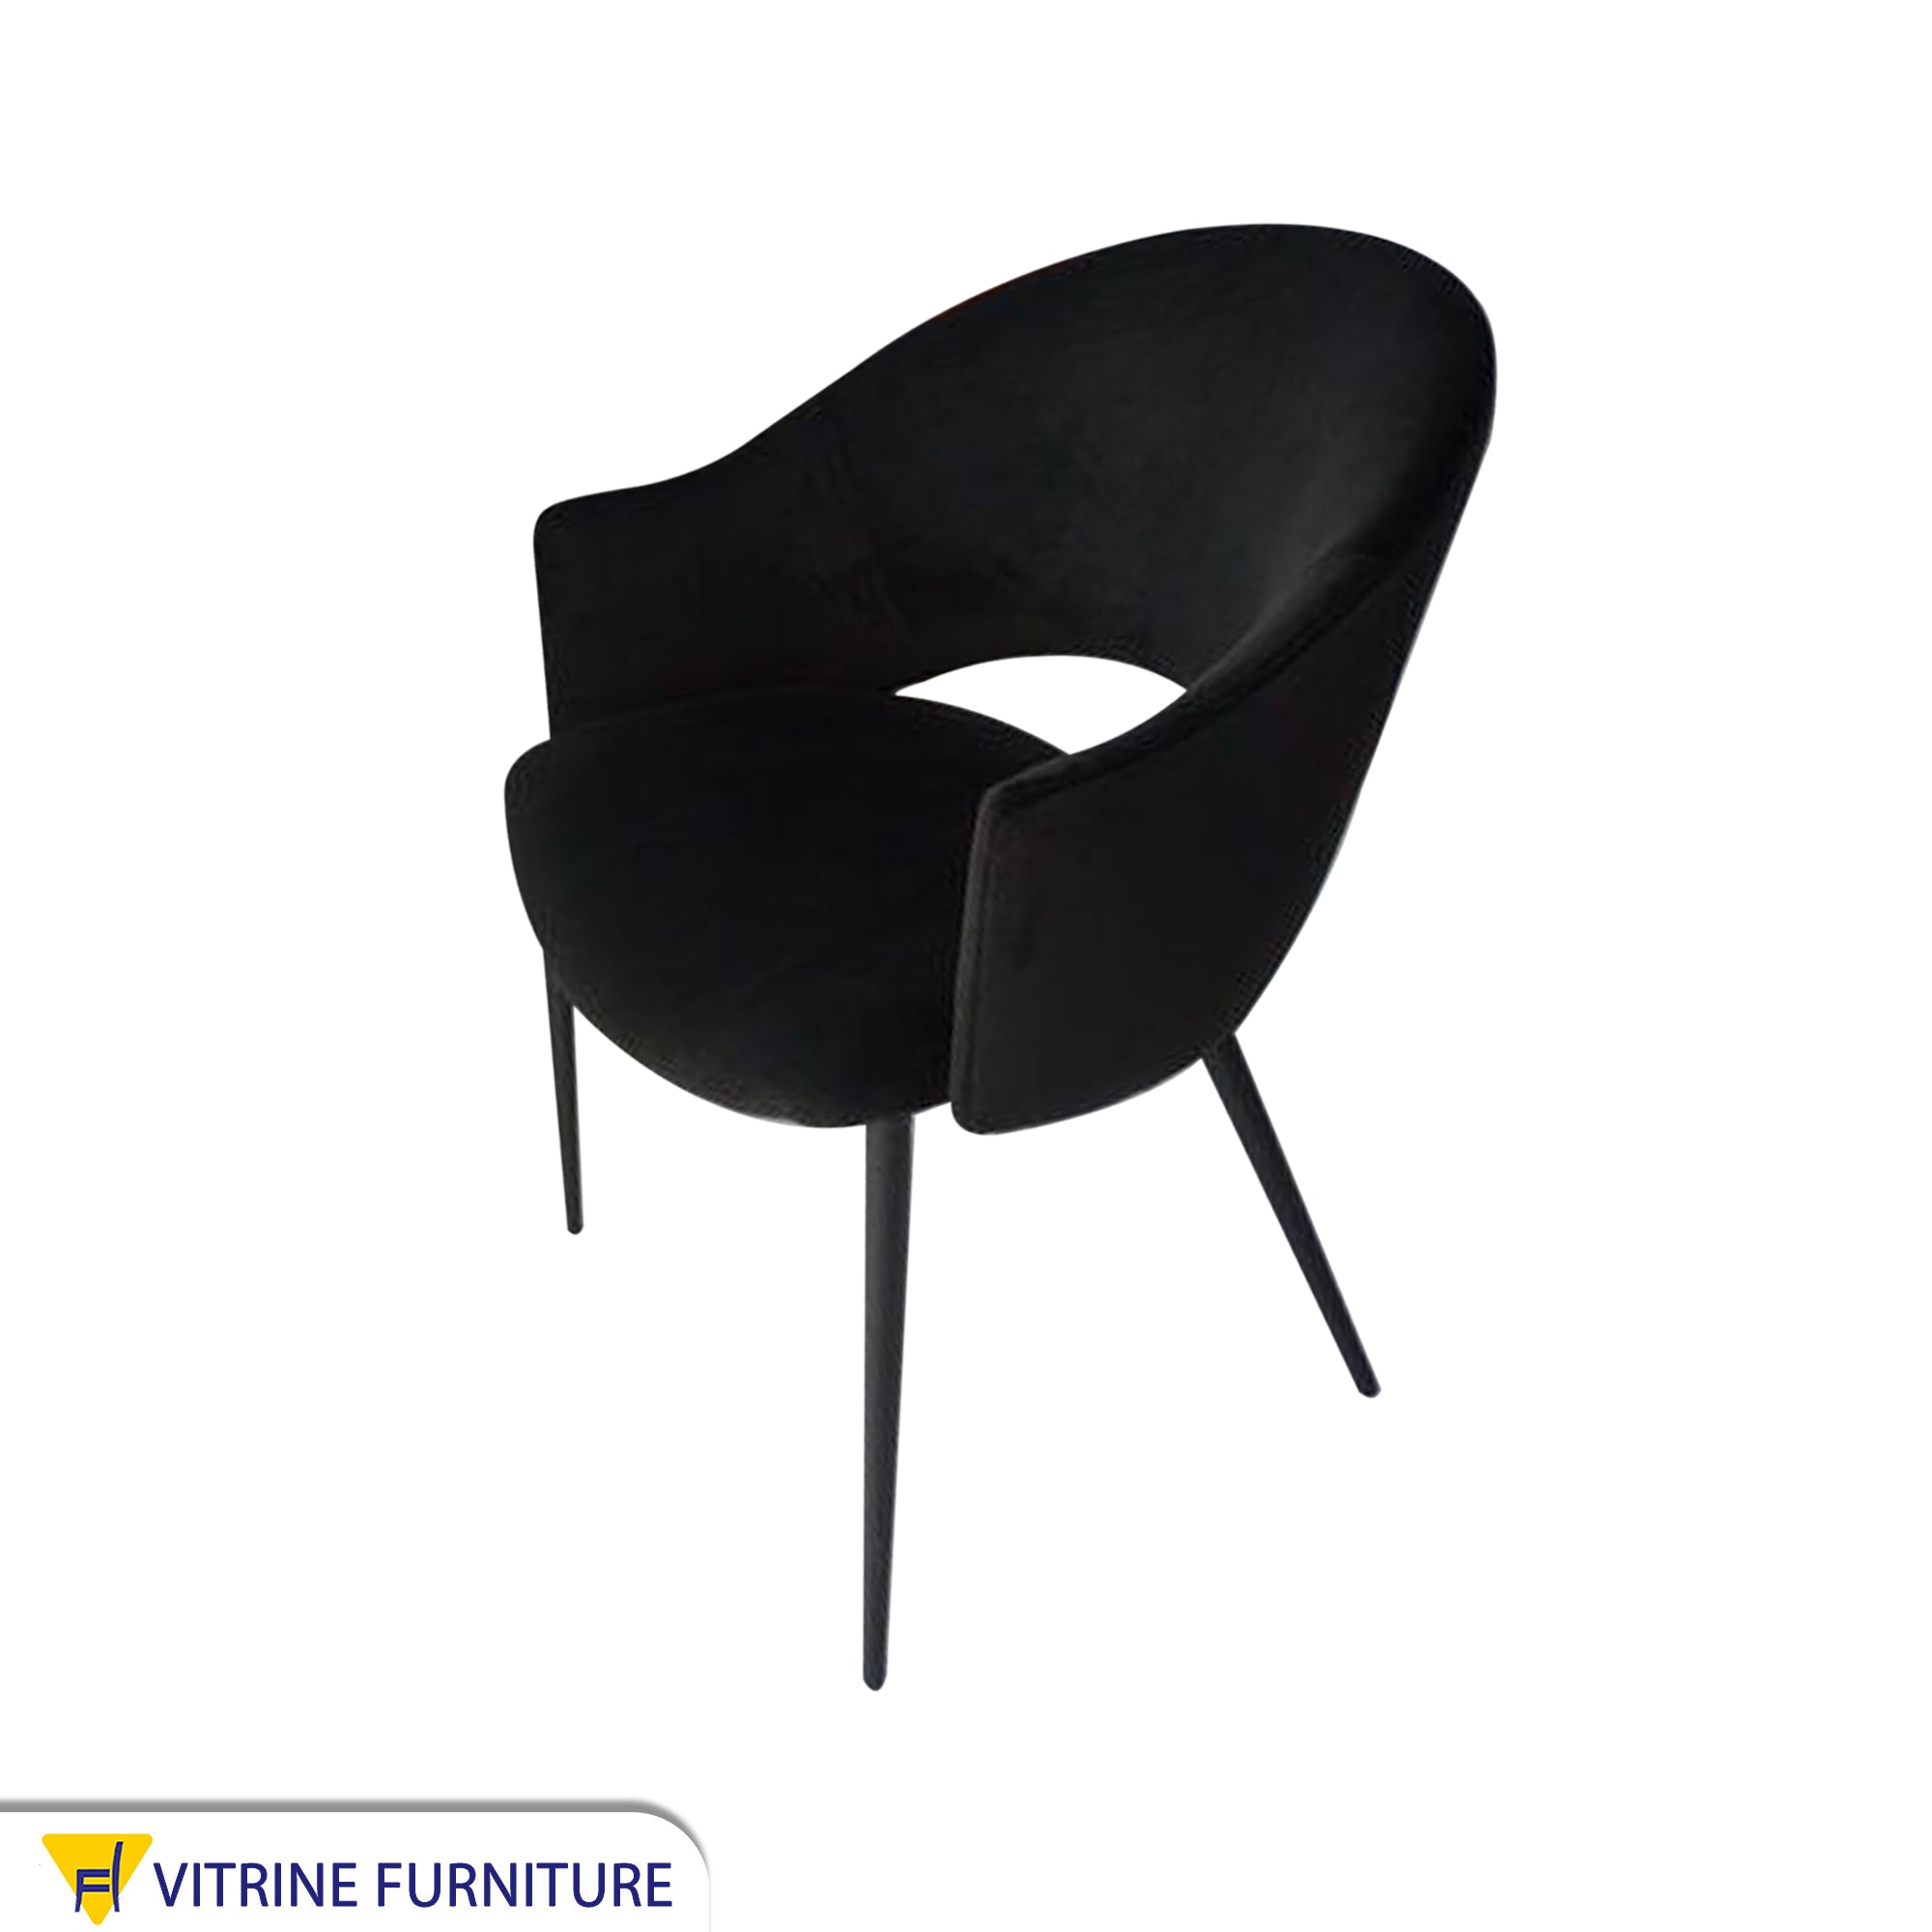 Black upholstered chair